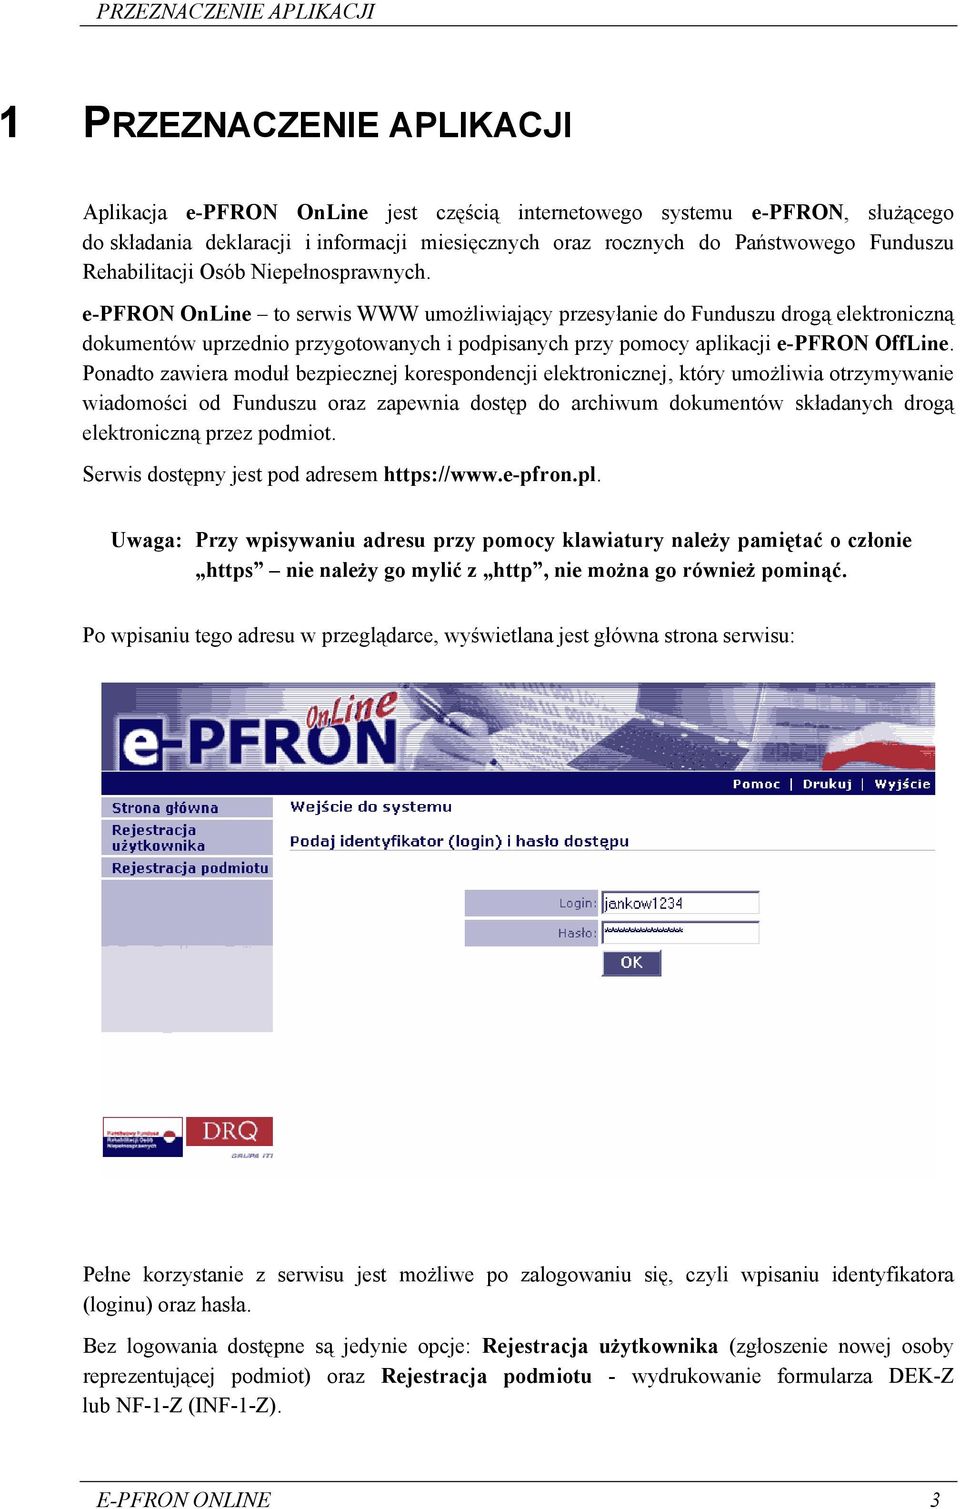 e-pfron OnLine to serwis WWW umożliwiający przesyłanie do Funduszu drogą elektroniczną dokumentów uprzednio przygotowanych i podpisanych przy pomocy aplikacji e-pfron OffLine.